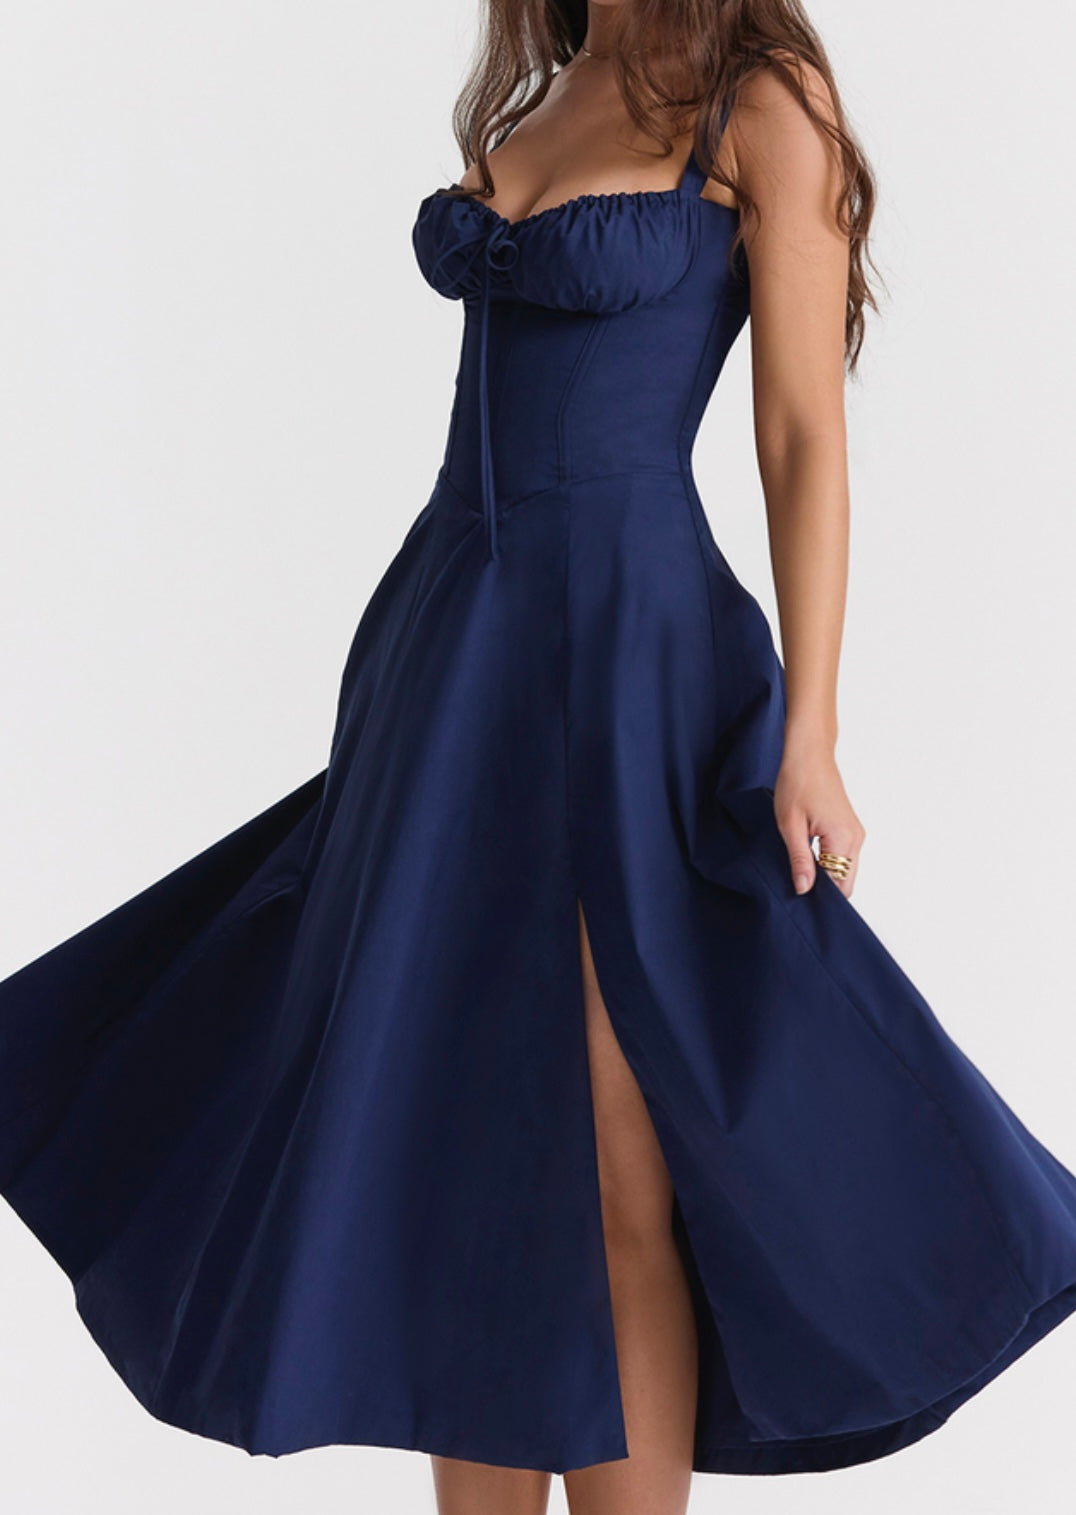 AAFROSE Royal blue bustier maxi dress